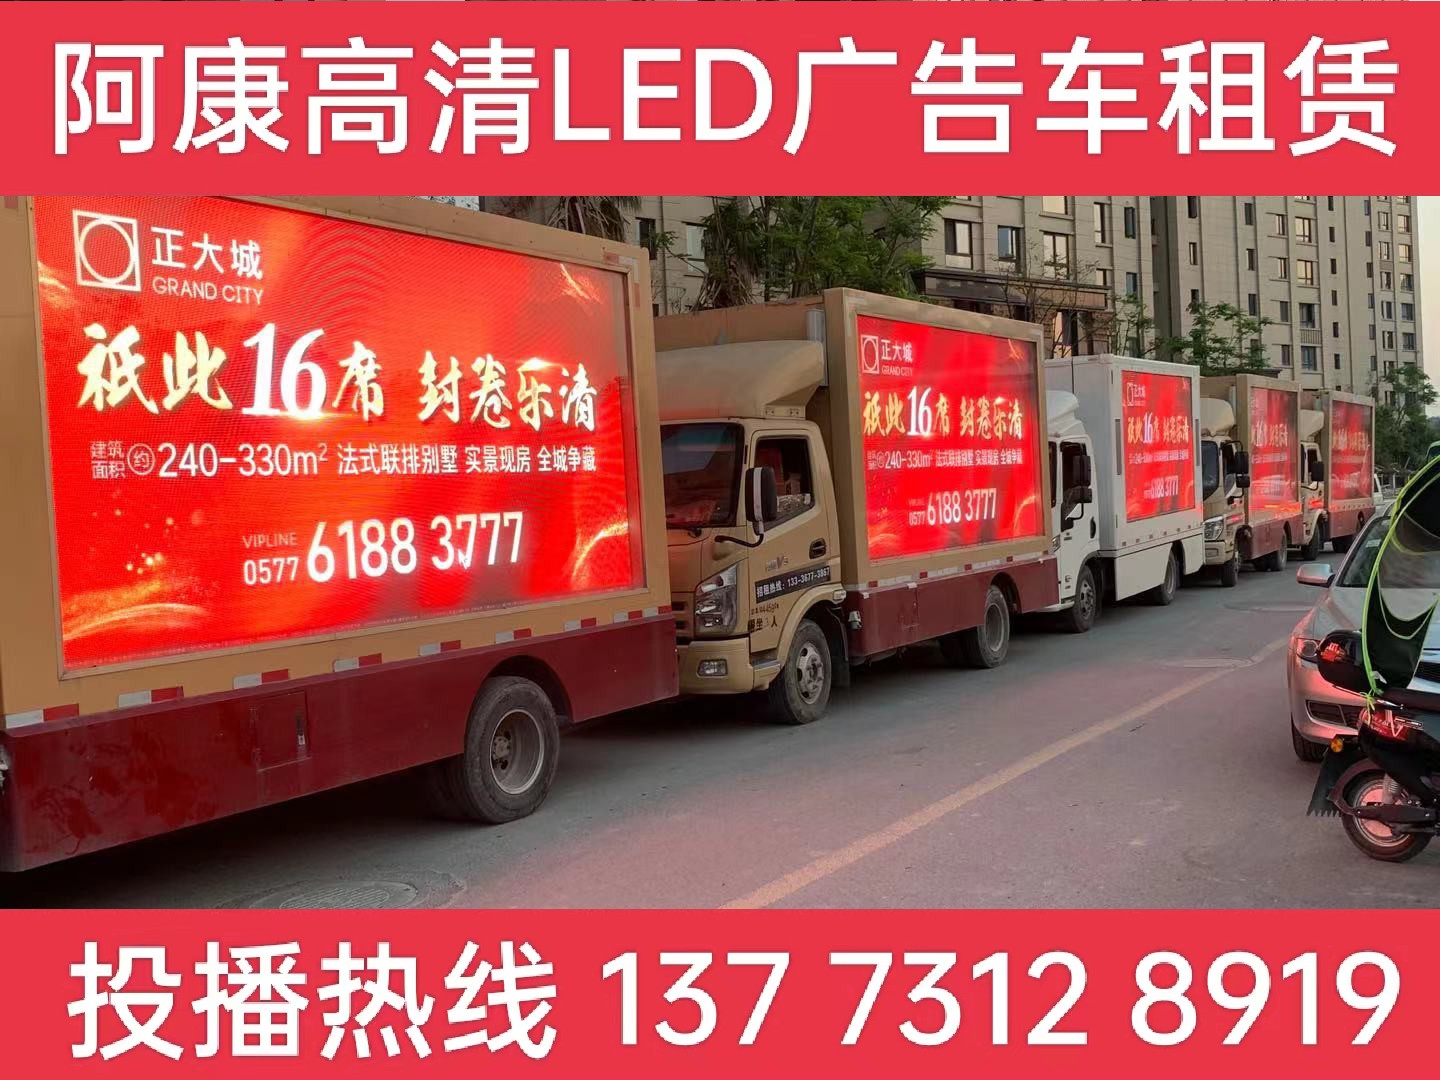 句容LED广告车出租